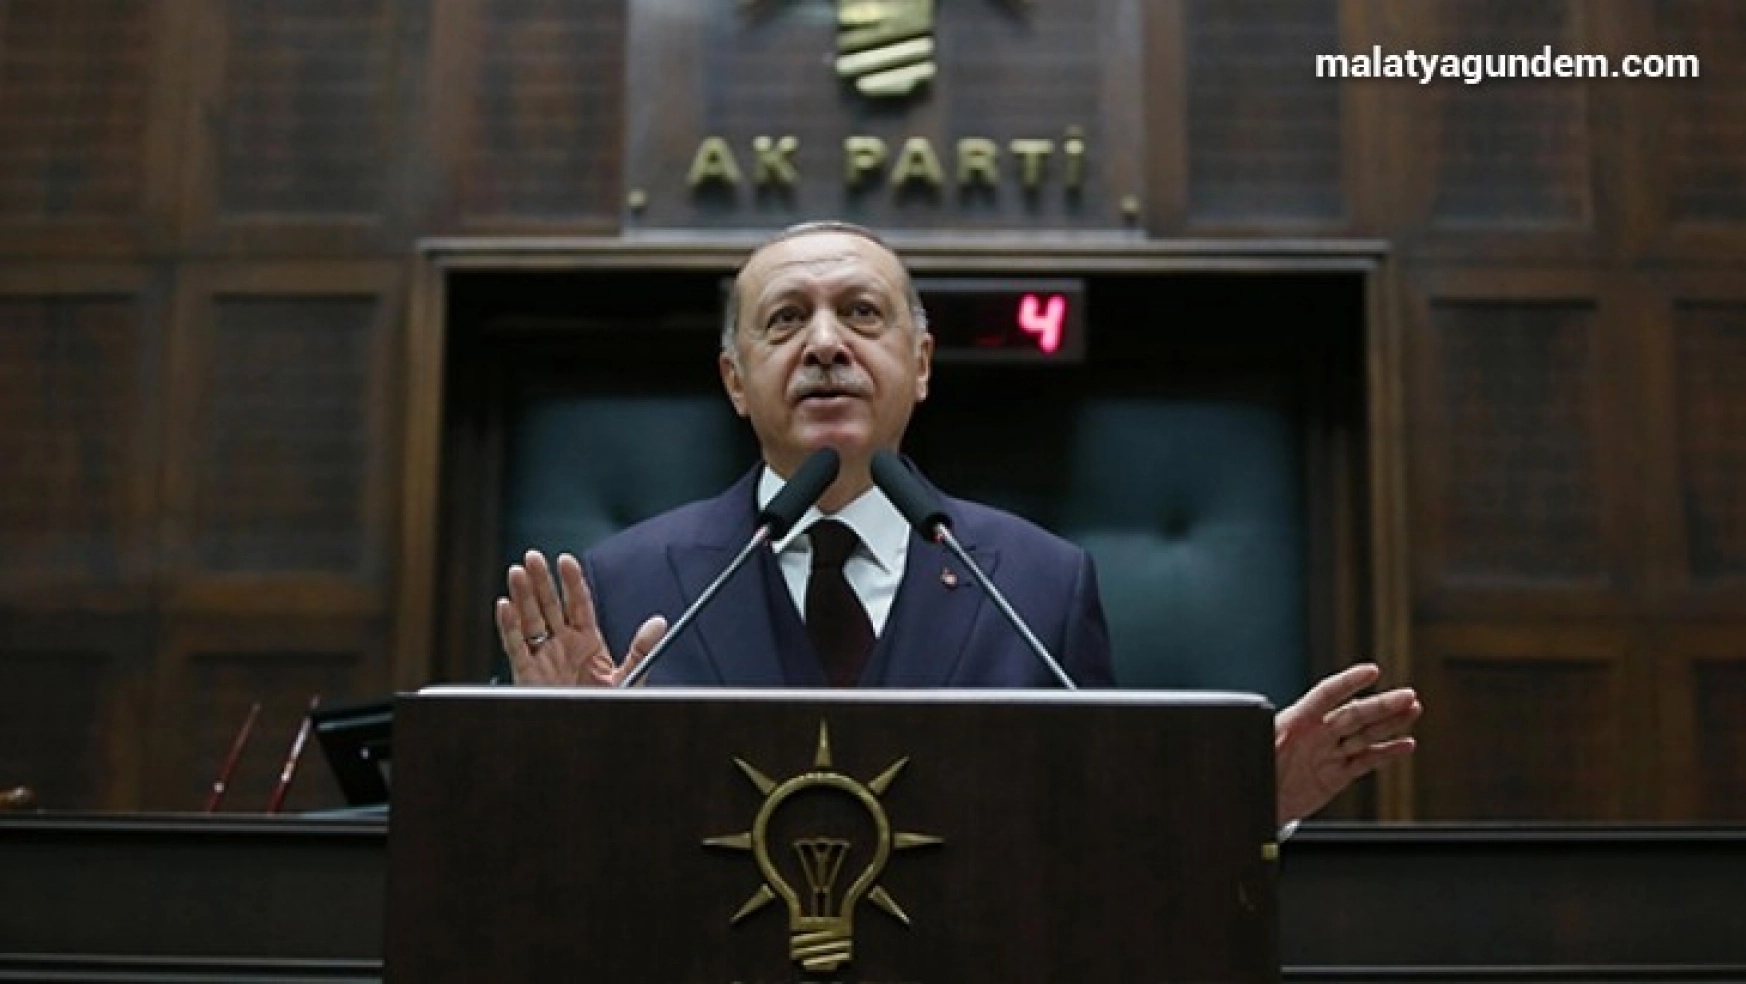 Cumhurbaşkanı Erdoğan'dan gündeme dair kritik mesajlar